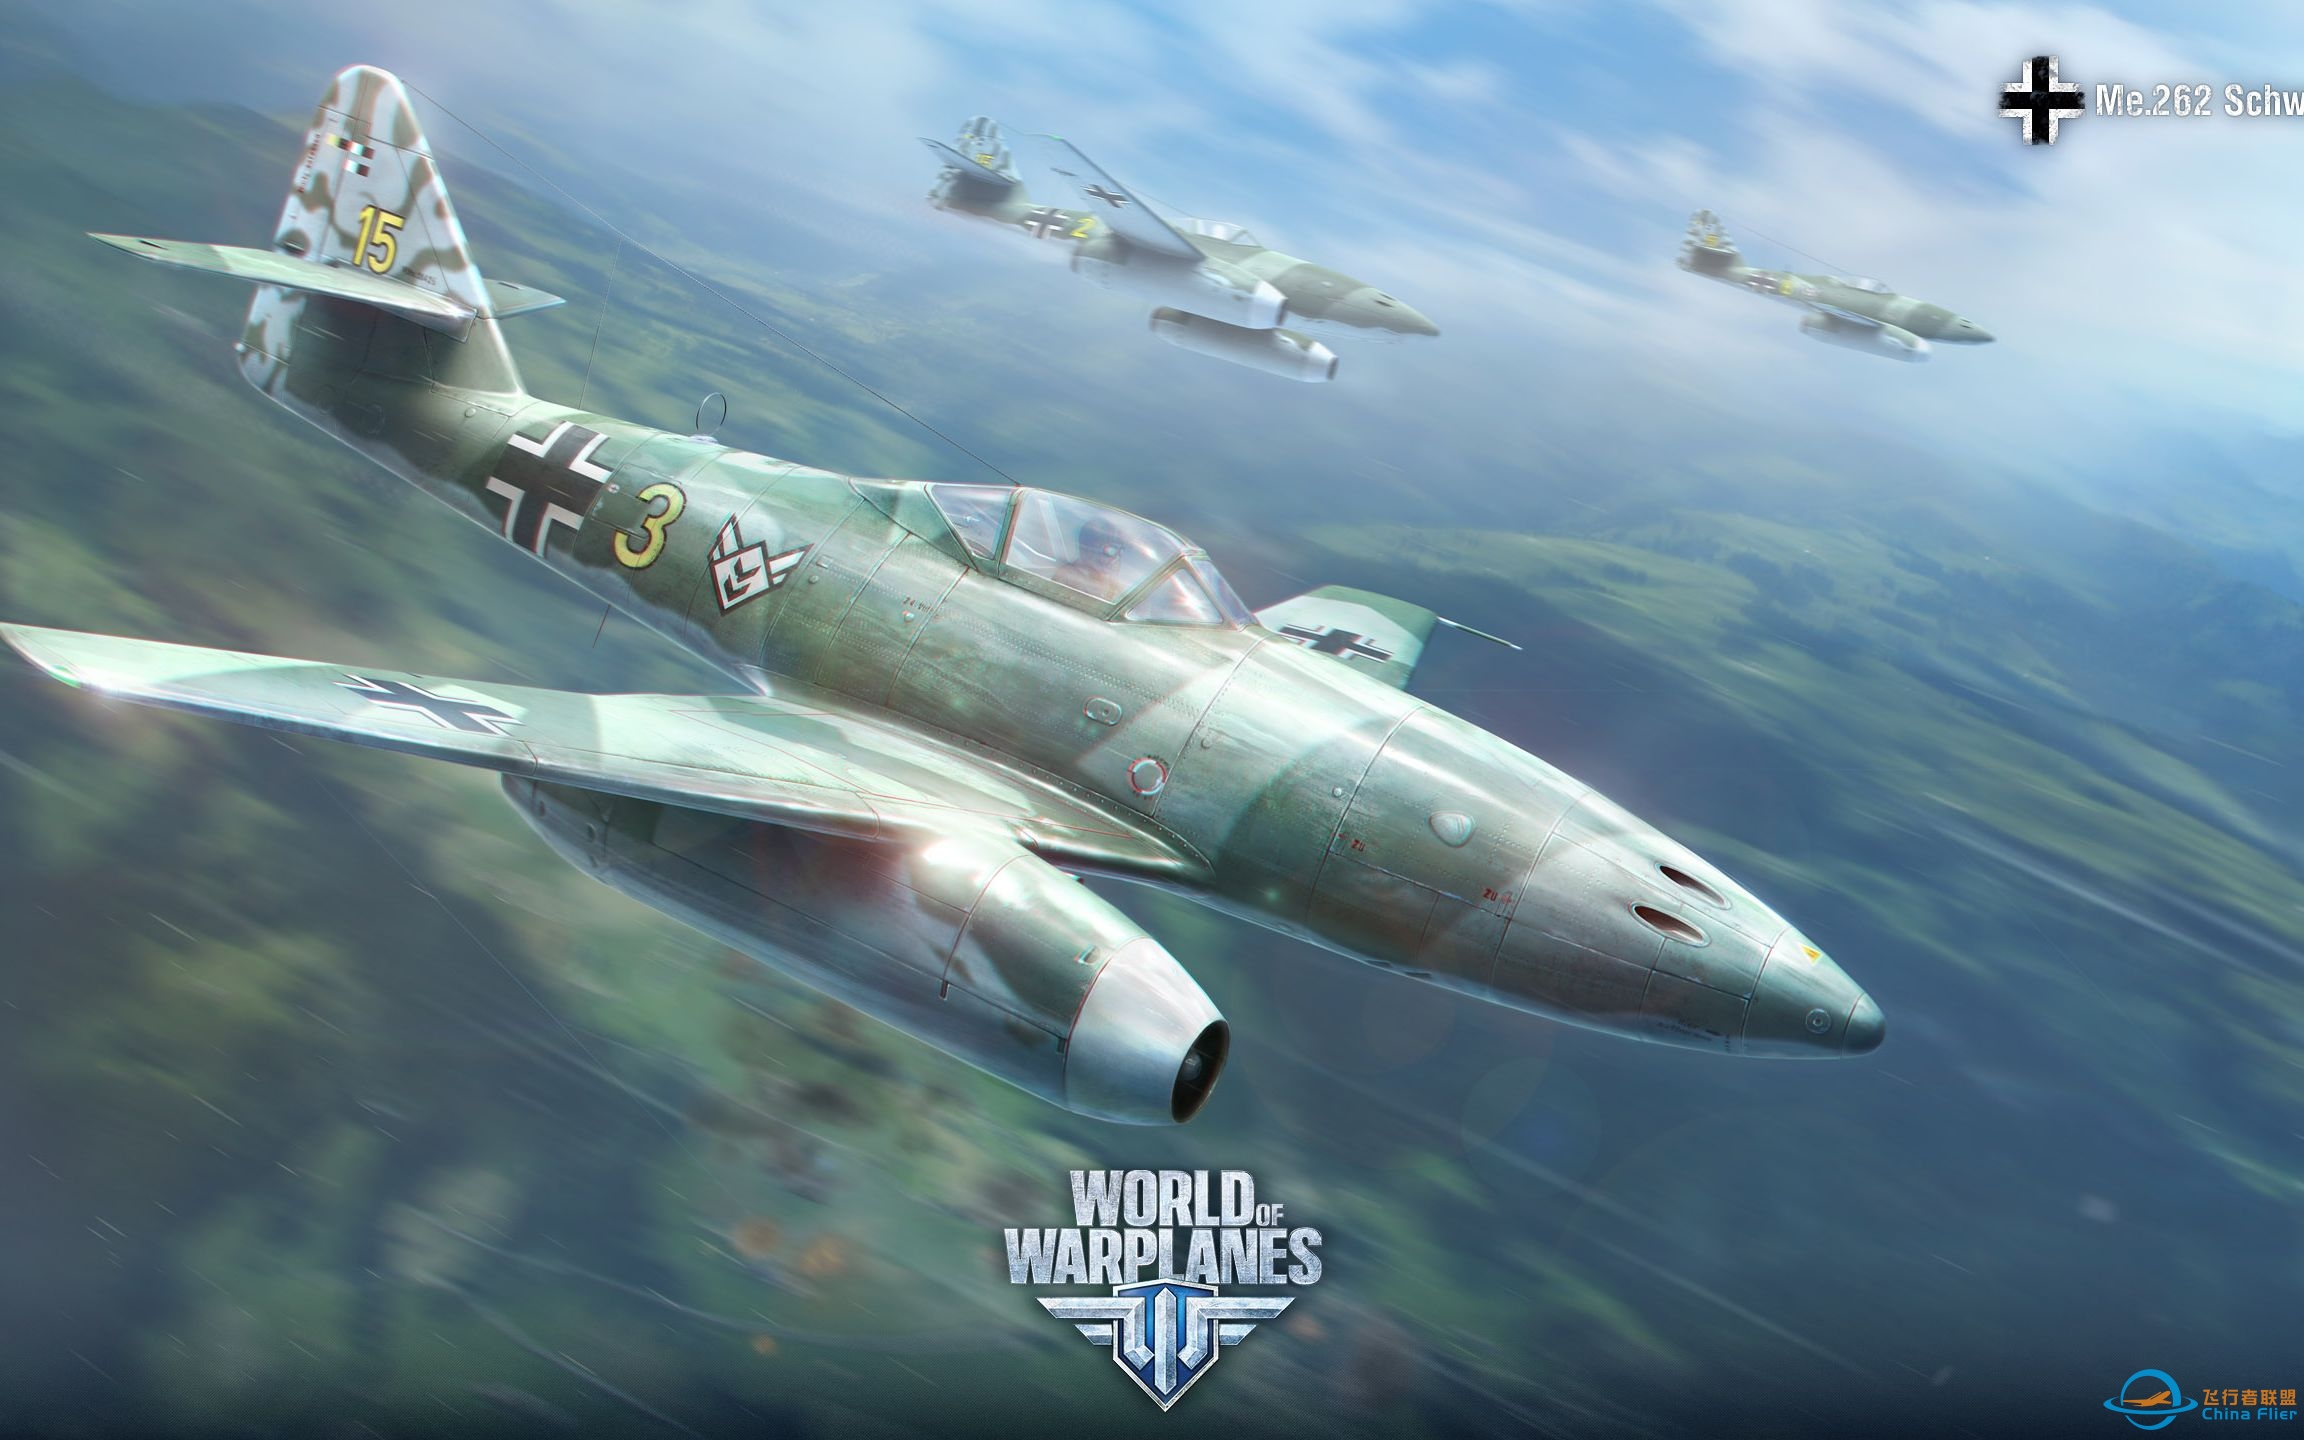 【战机世界】这是一个无脑高空的游戏，Bf109Z 8杀-792 